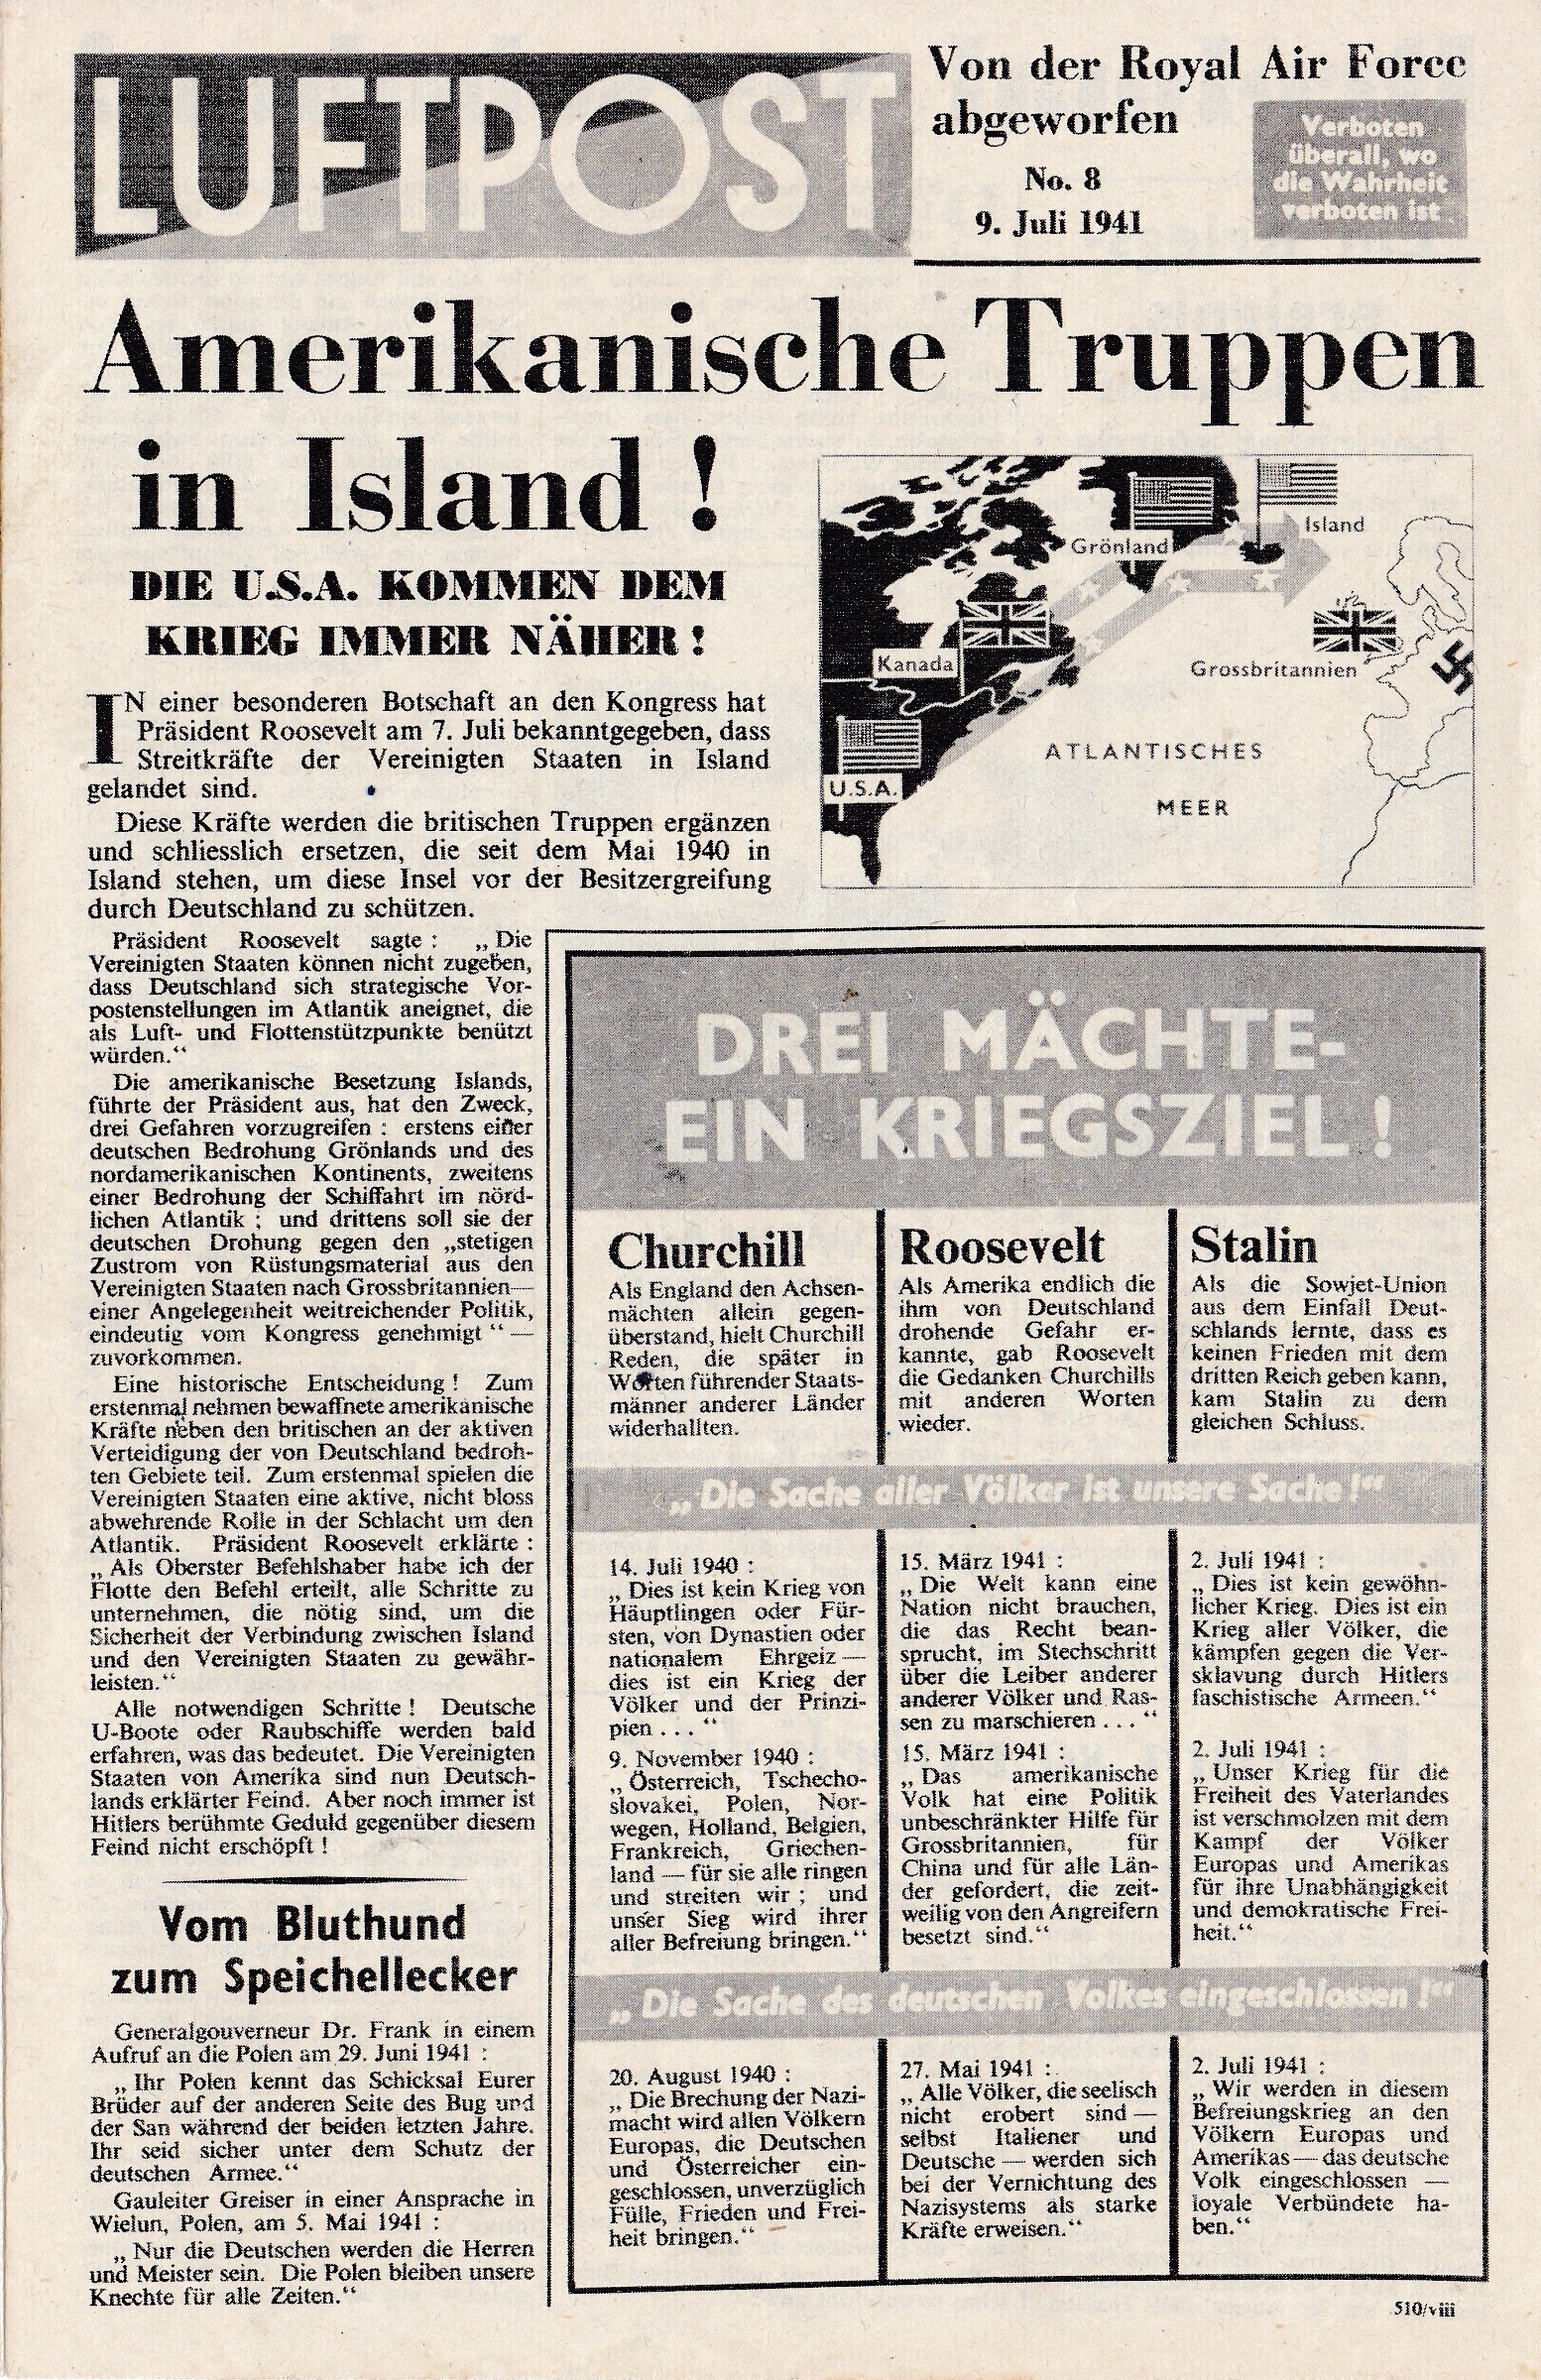 Kriegsflugblatt: 510/iv [1941] Luftpost No. 4, 16. Juni 1941 (Moritz-Adolf Trappe CC BY-NC-SA)